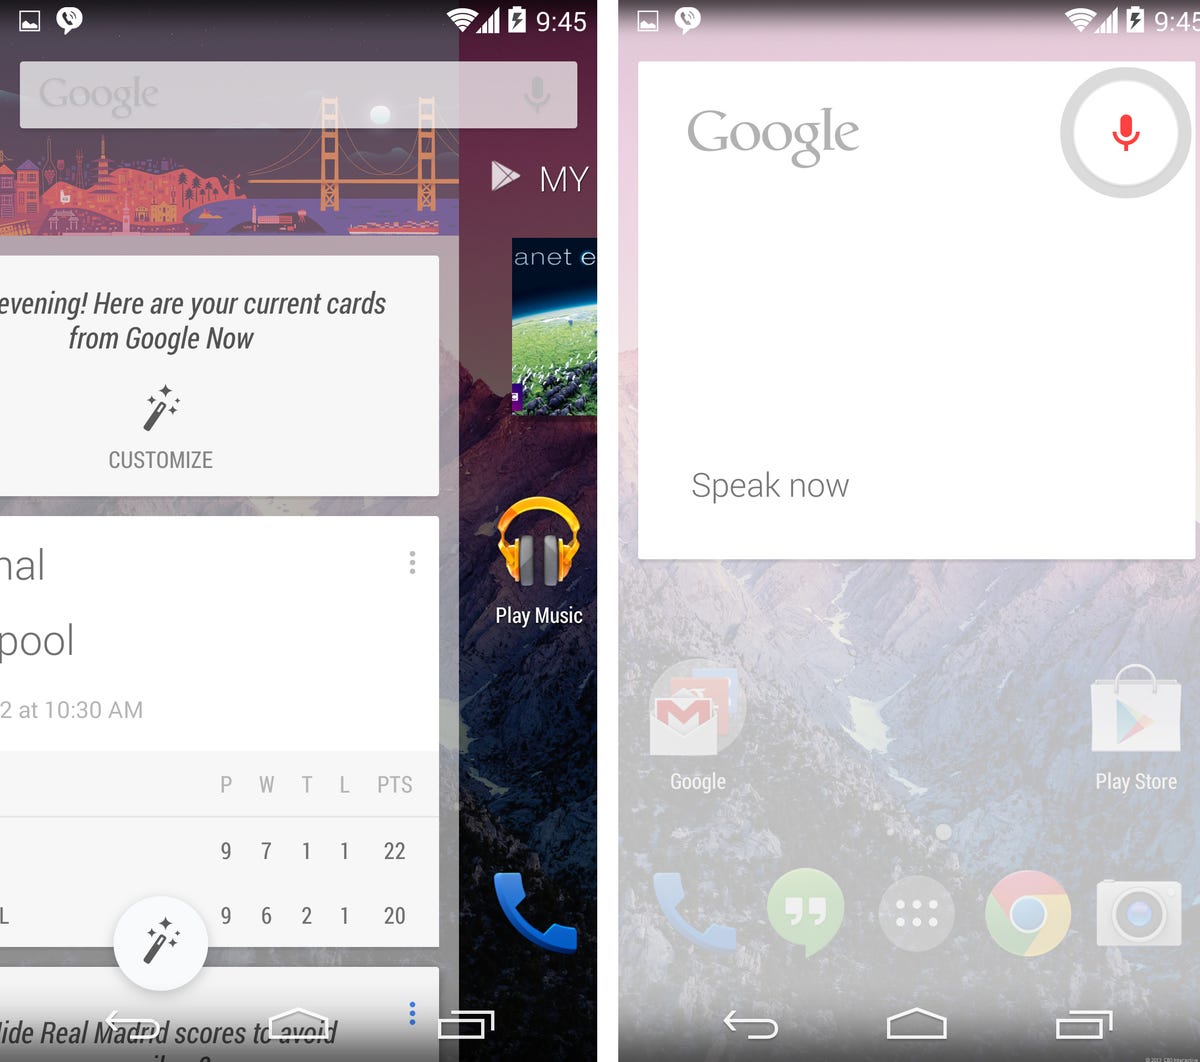 Google Nexus 5 (Google Now)